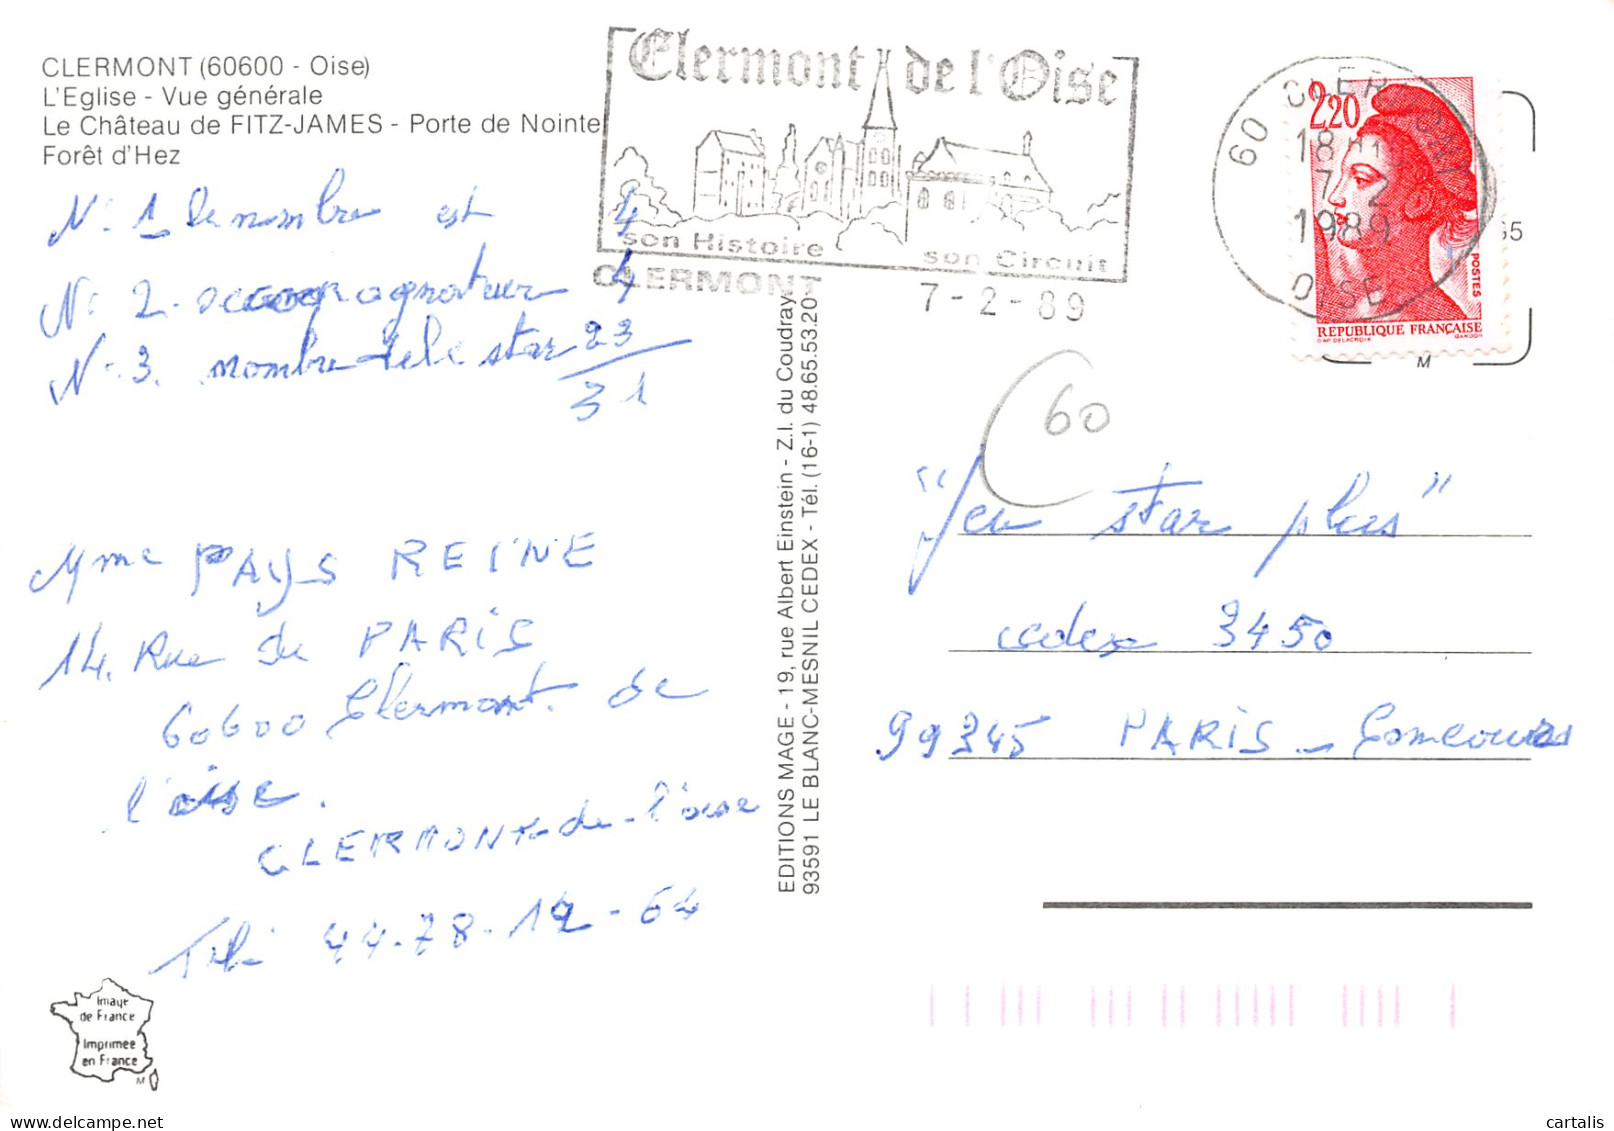 60-CLERMONT DE LOISE-N°3740-B/0165 - Clermont